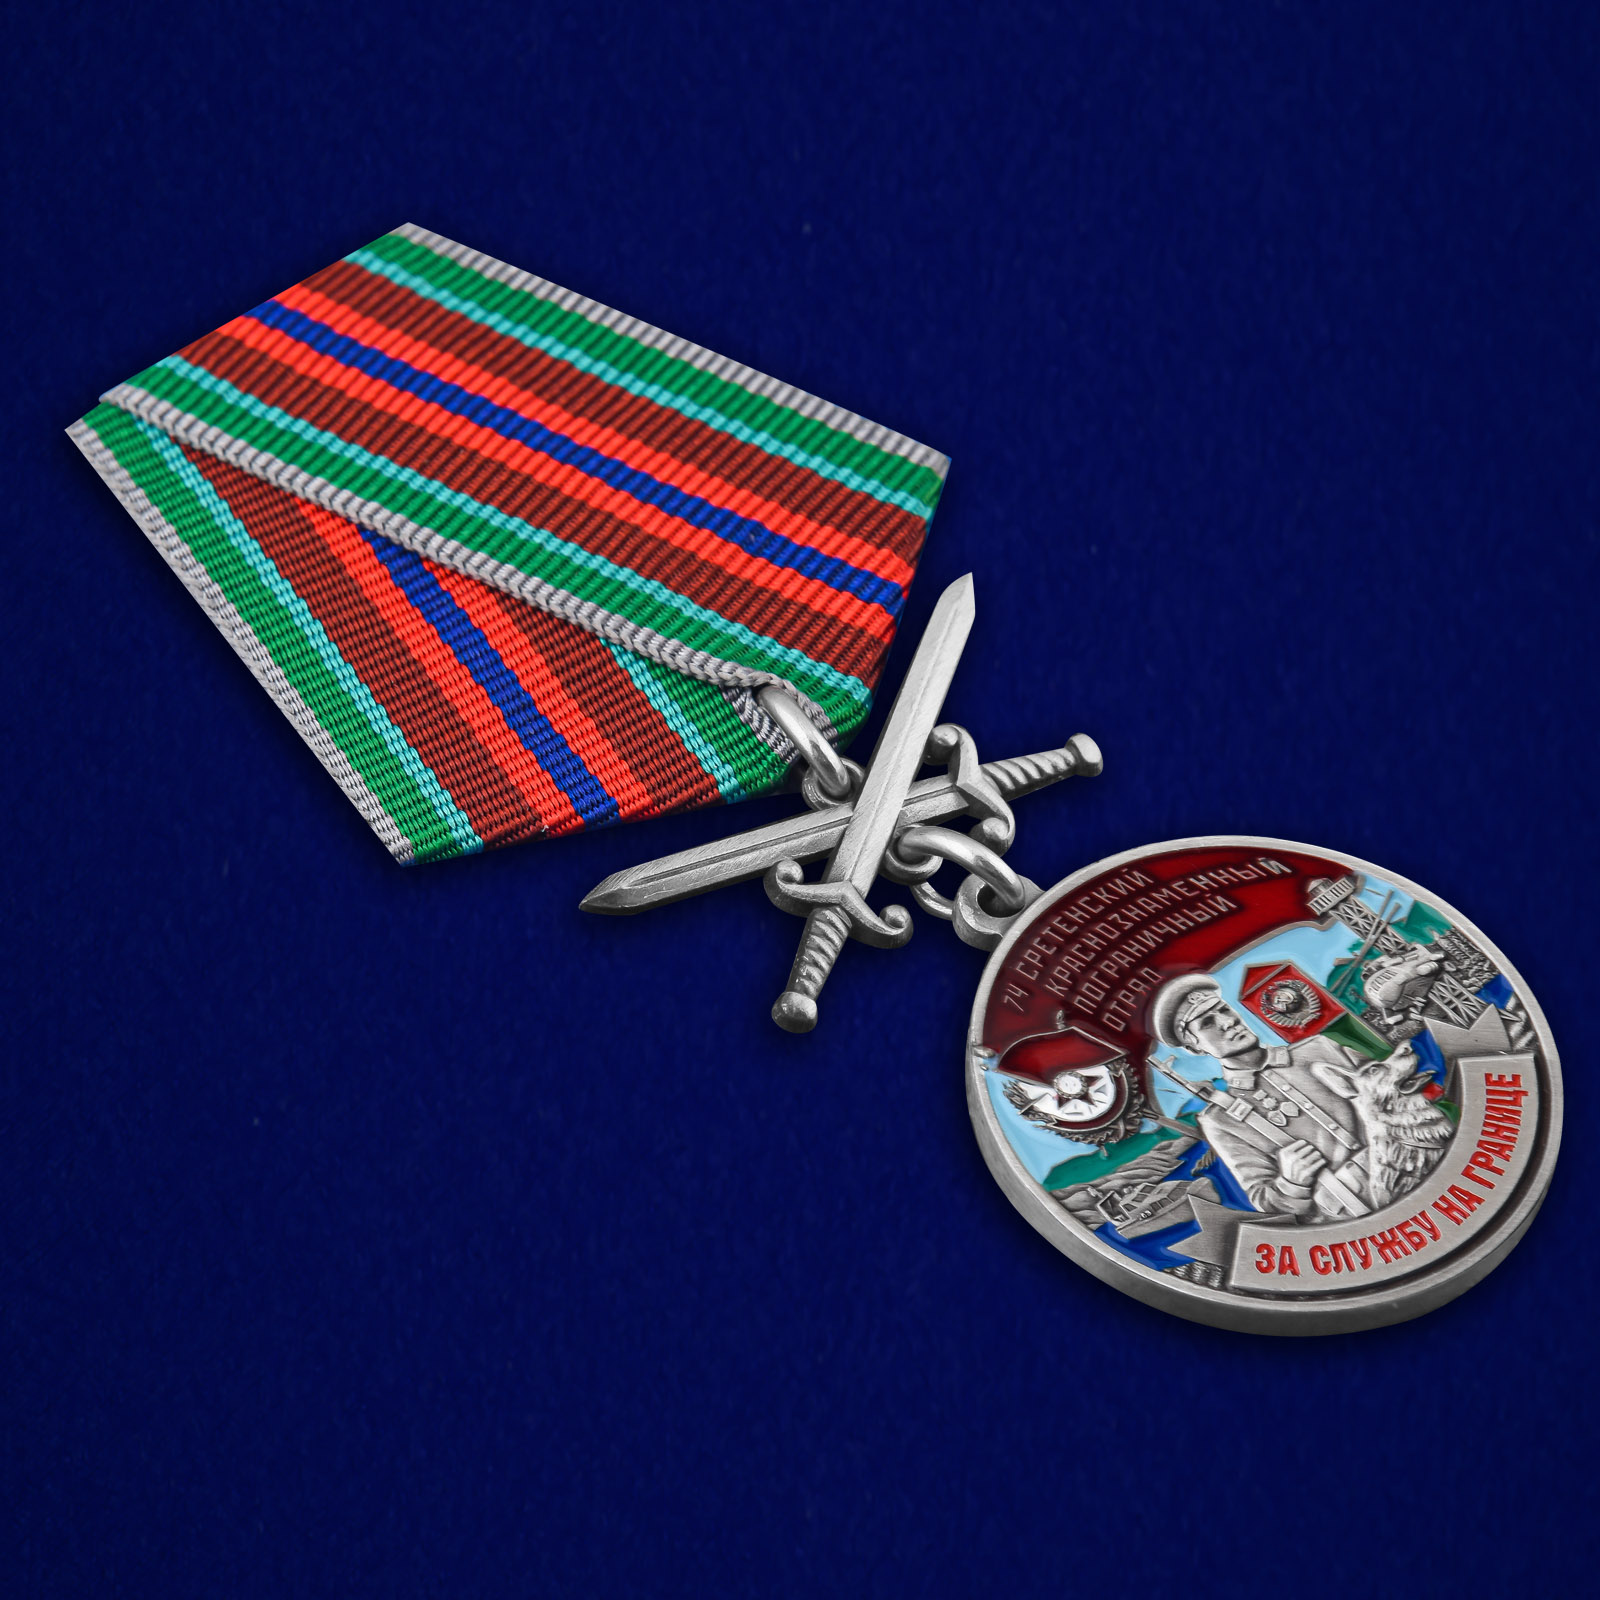 Купить медаль "За службу в Сретенском пограничном отряде"